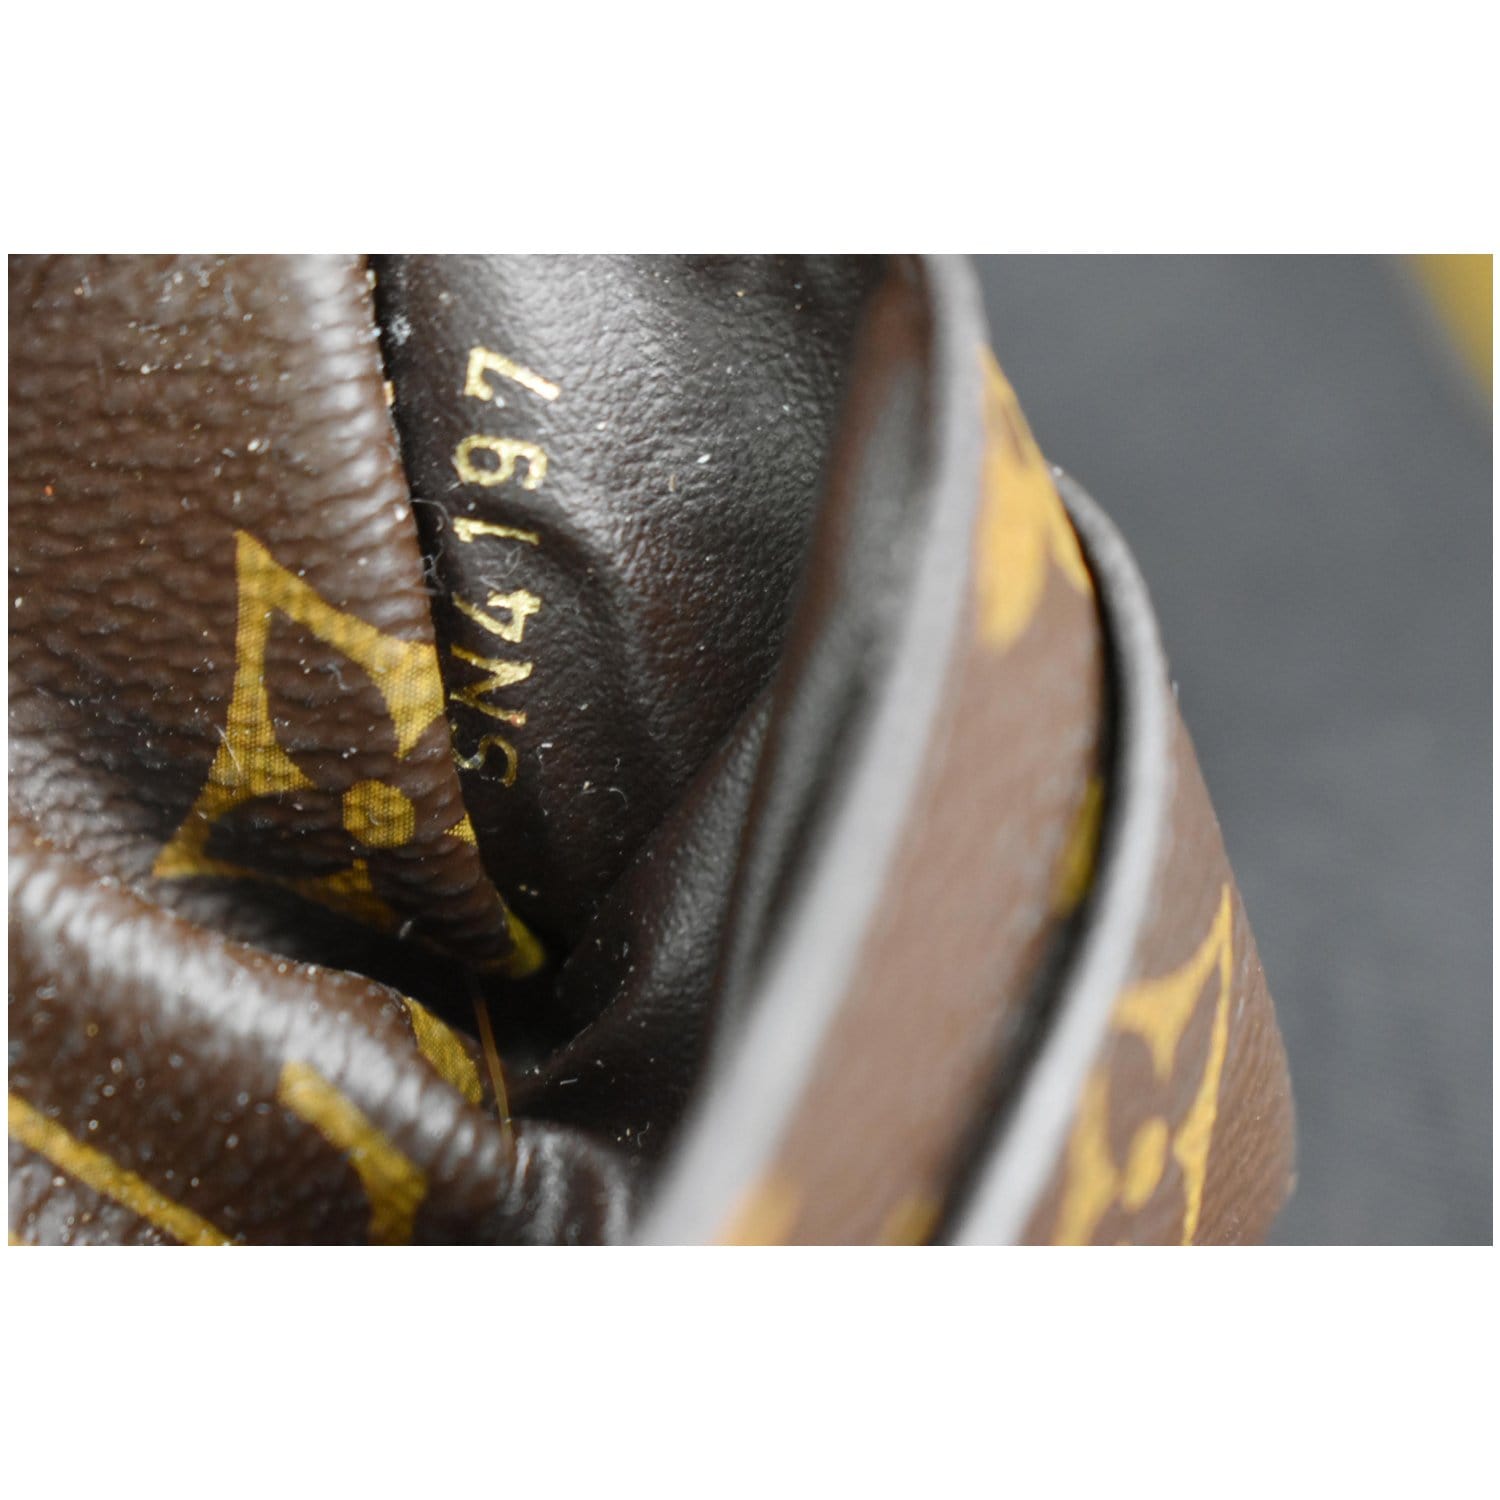 Louis Vuitton PALLAS Monogram canvas calf leather M41064 Black